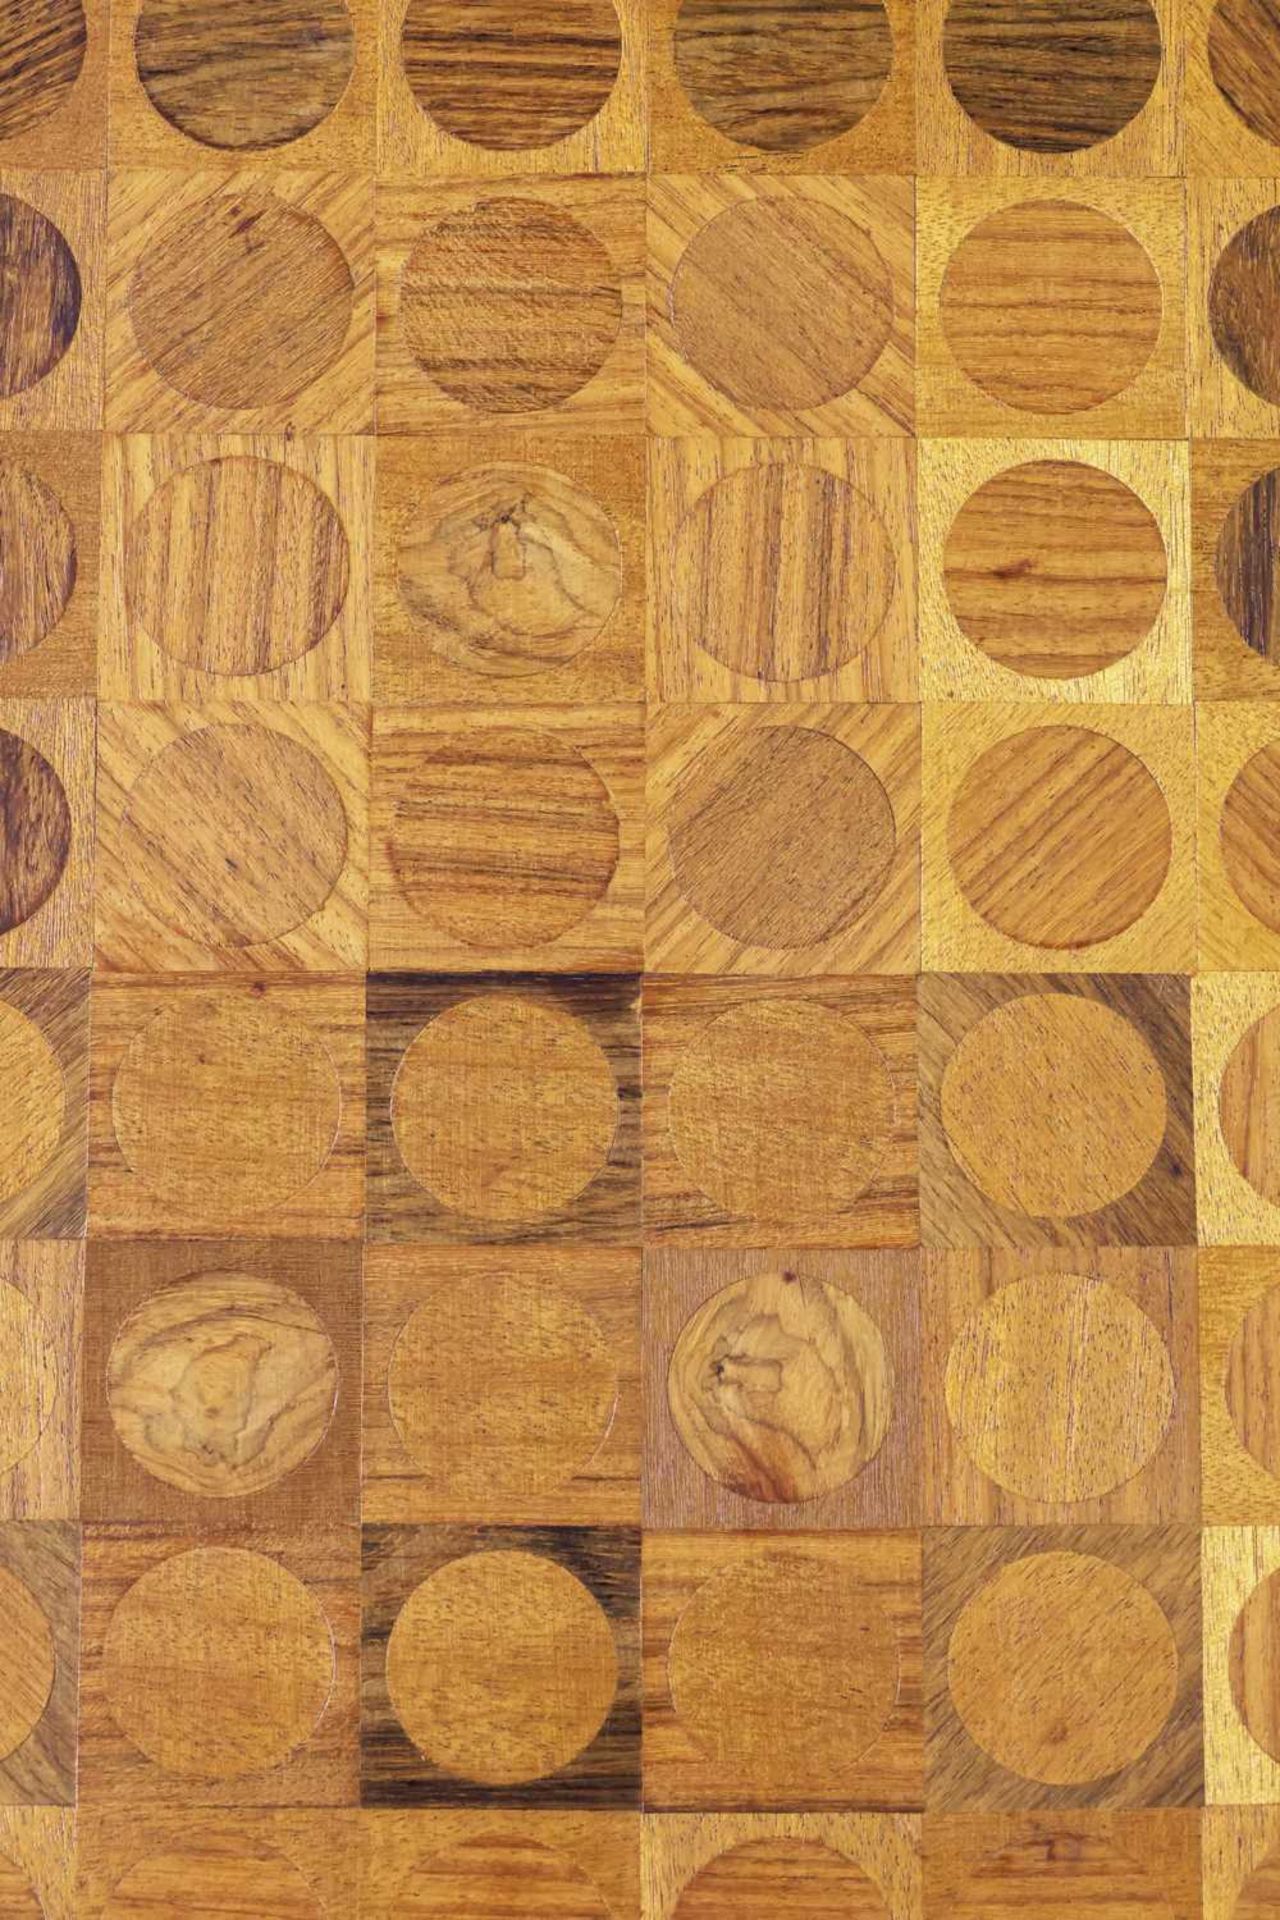 Holz-Collage/Intarsienild "Quadrat und Kreis" (1967) - Bild 2 aus 3